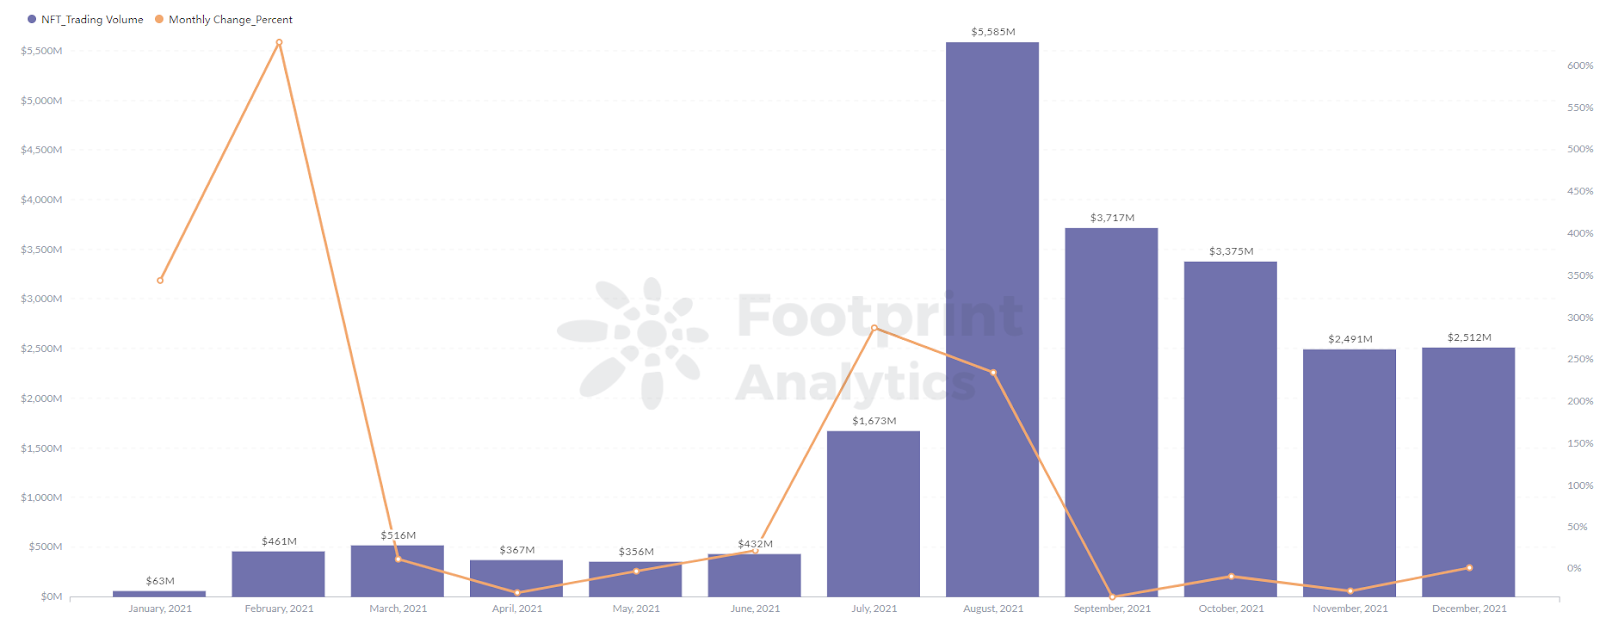 Footprint Analytics – Az NFT Projects kereskedési volumene augusztusban 5,586 milliós csúcsot ért el